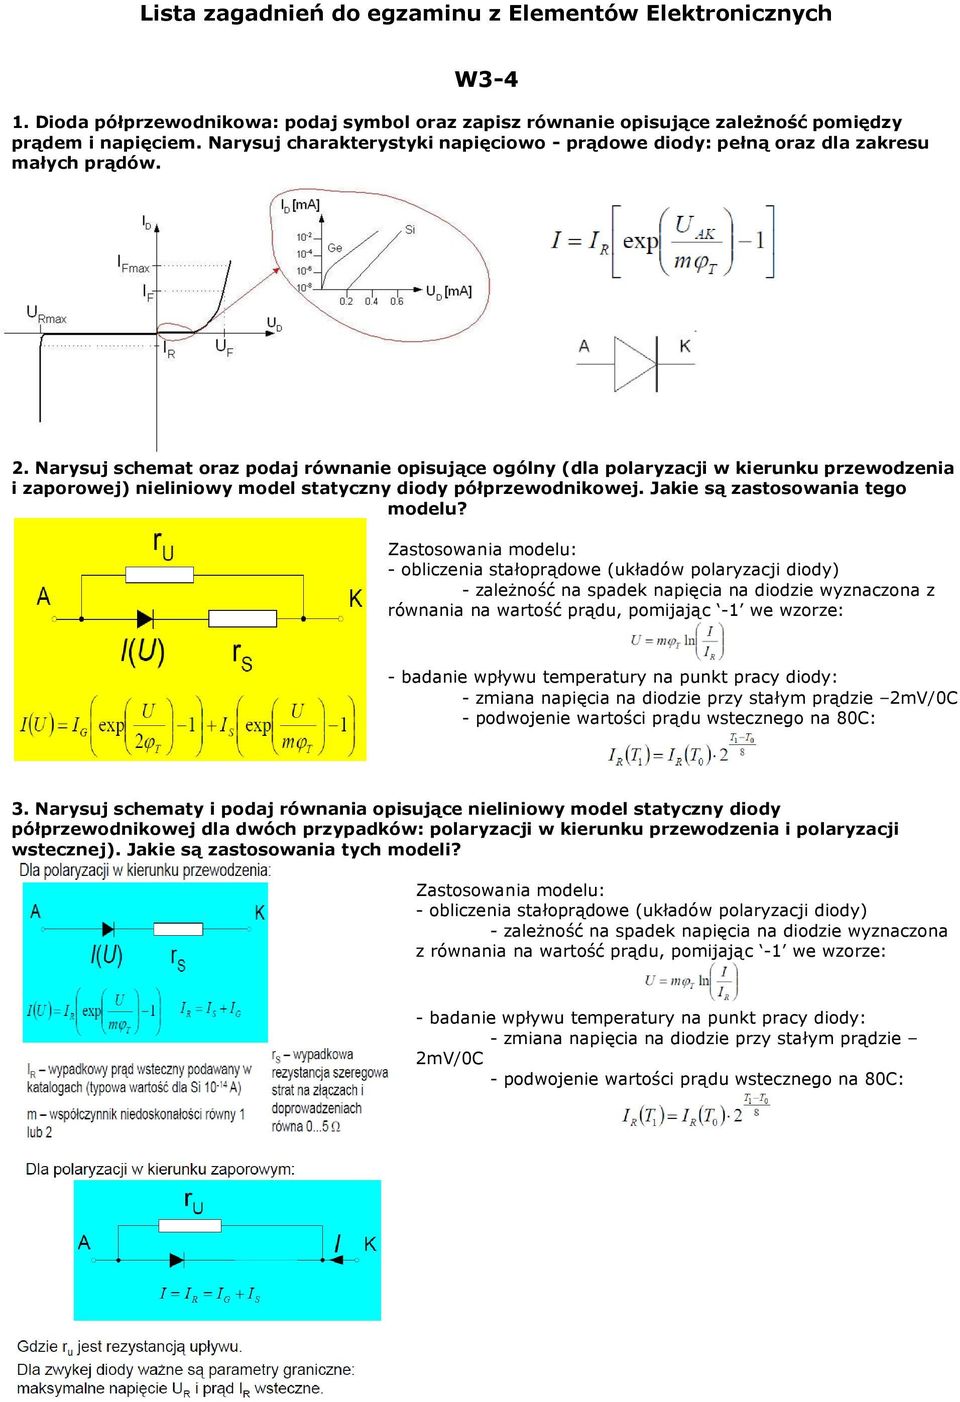 Narysuj schemat oraz podaj równanie opisujące ogólny (dla polaryzacji w kierunku przewodzenia i zaporowej) nieliniowy model statyczny diody półprzewodnikowej. Jakie są zastosowania tego modelu?